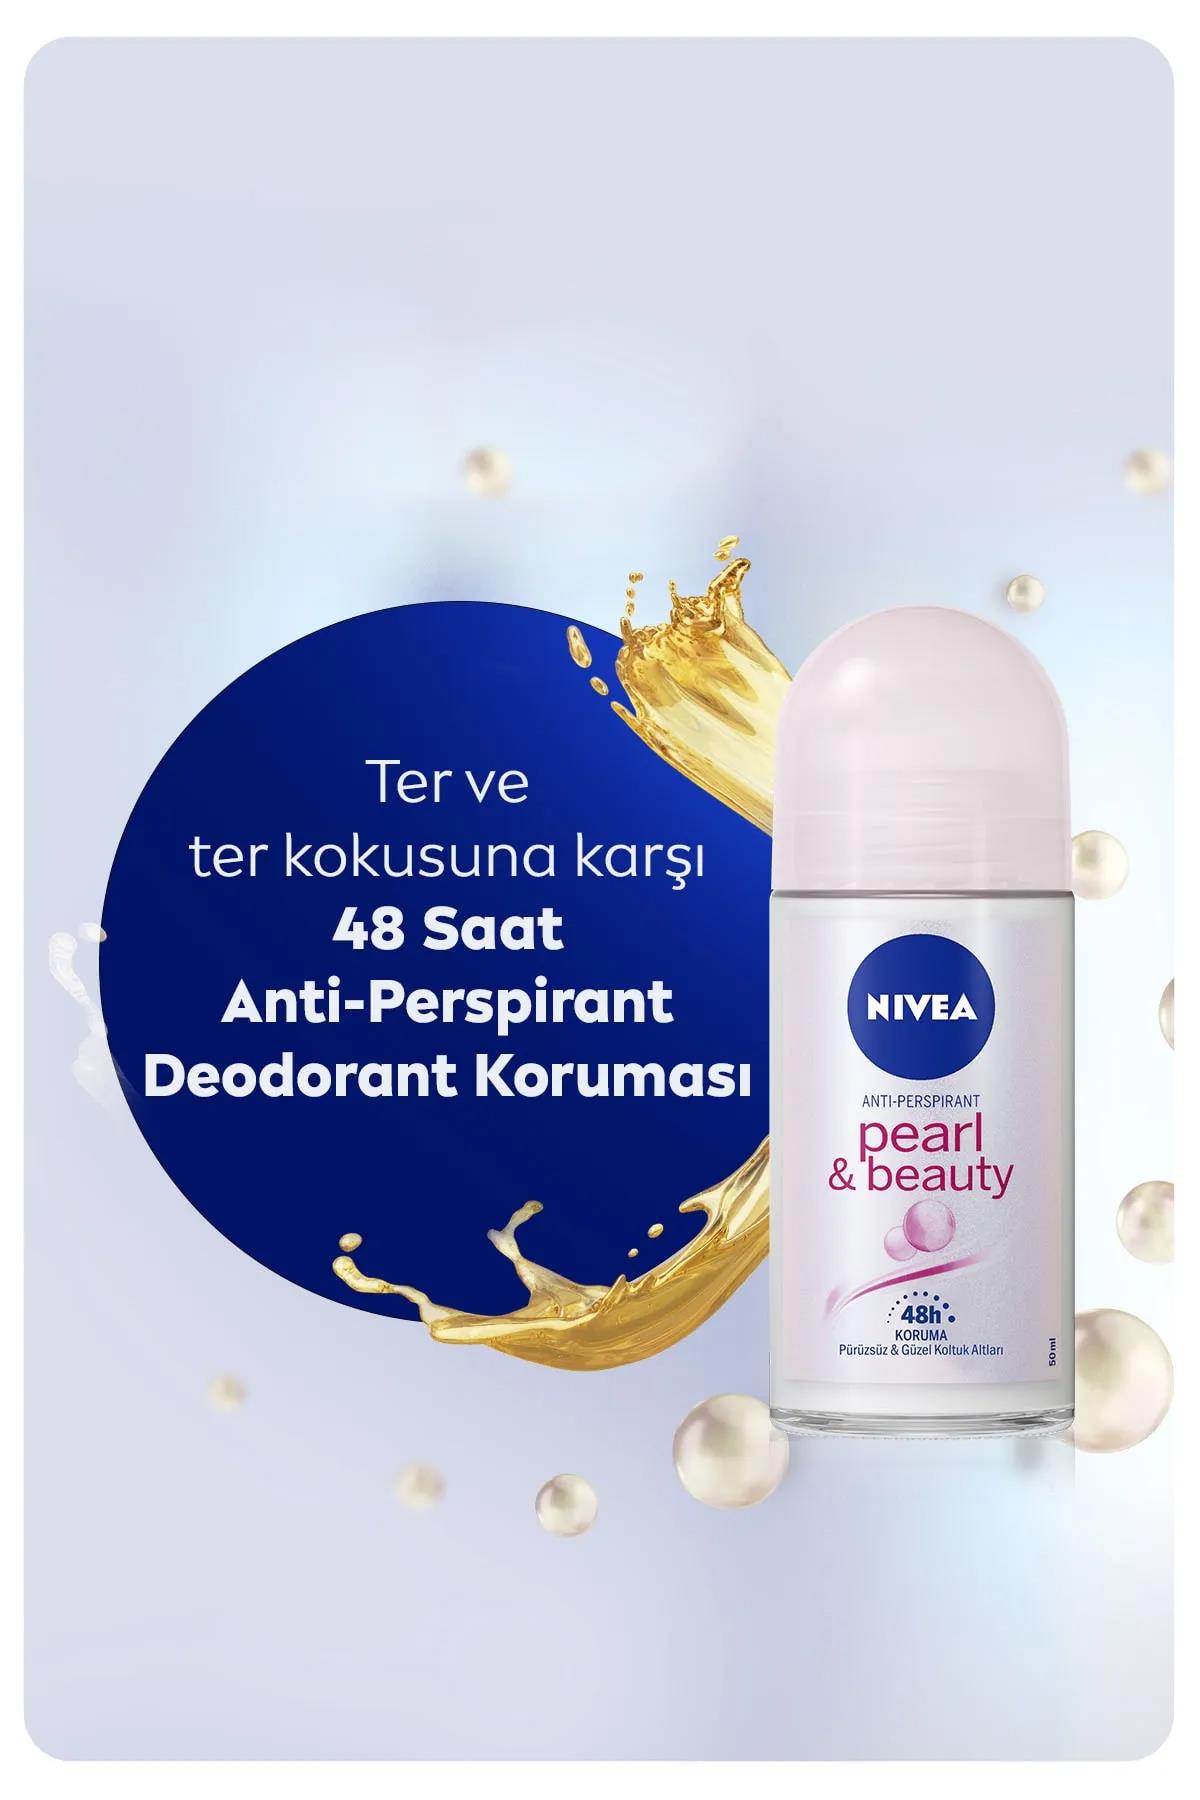 nivea-deodorant-roll-on-pearl-beauty-inci-ozleri-kadin-50-ml-6994-1.jpg